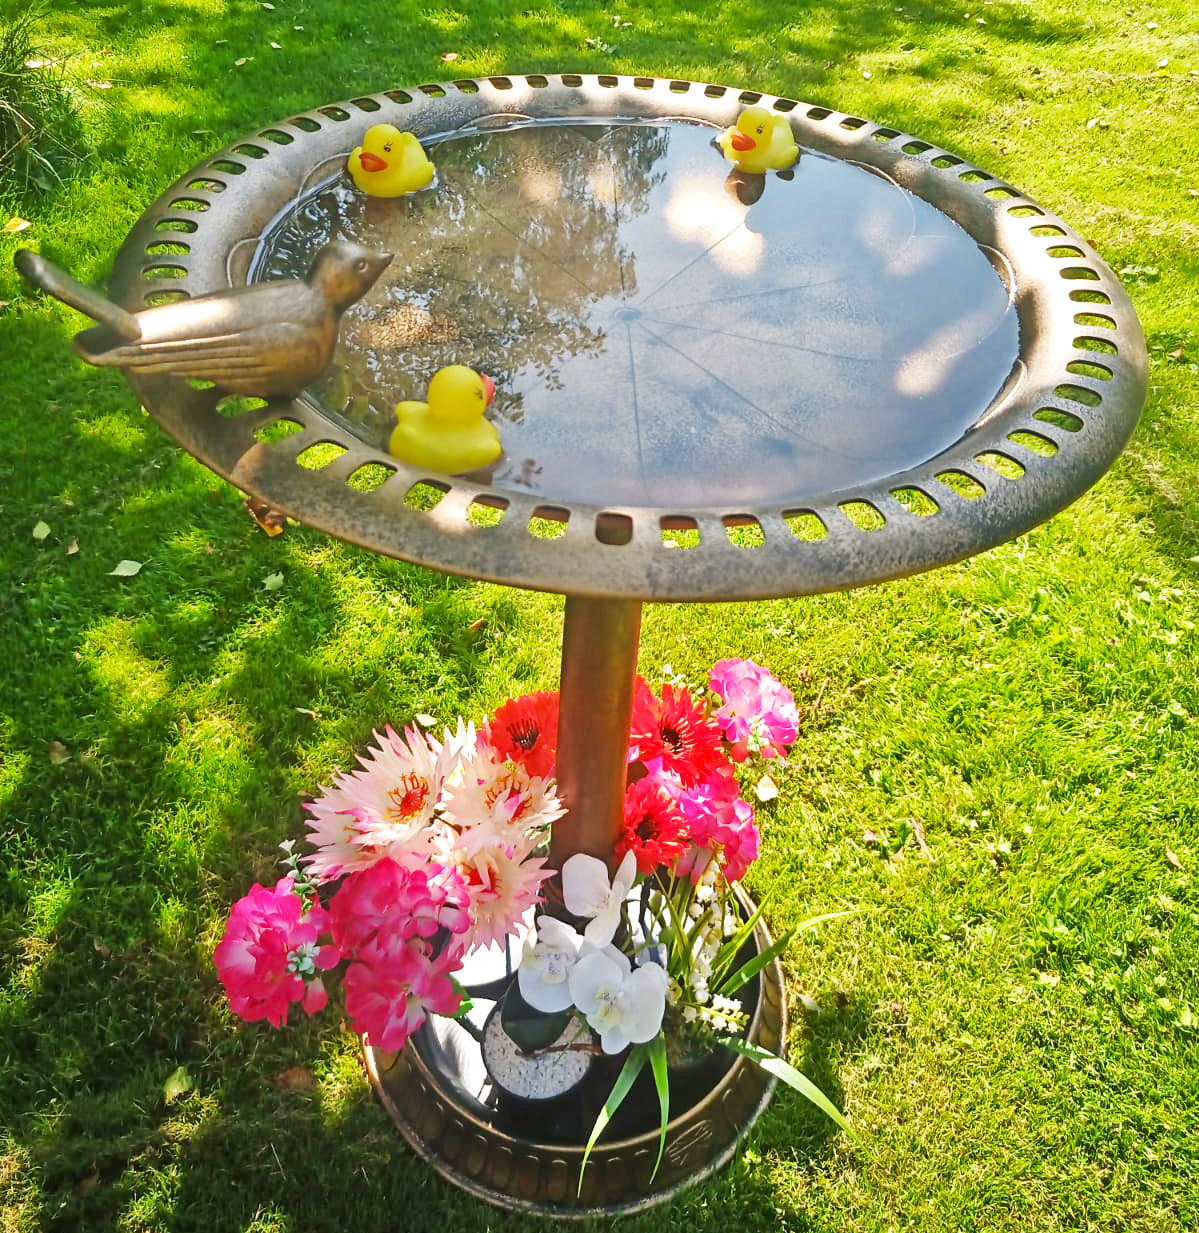 Садовая ванна для птичек, купальня кормкшка для птиц, садовый декор, подарок дачникам.